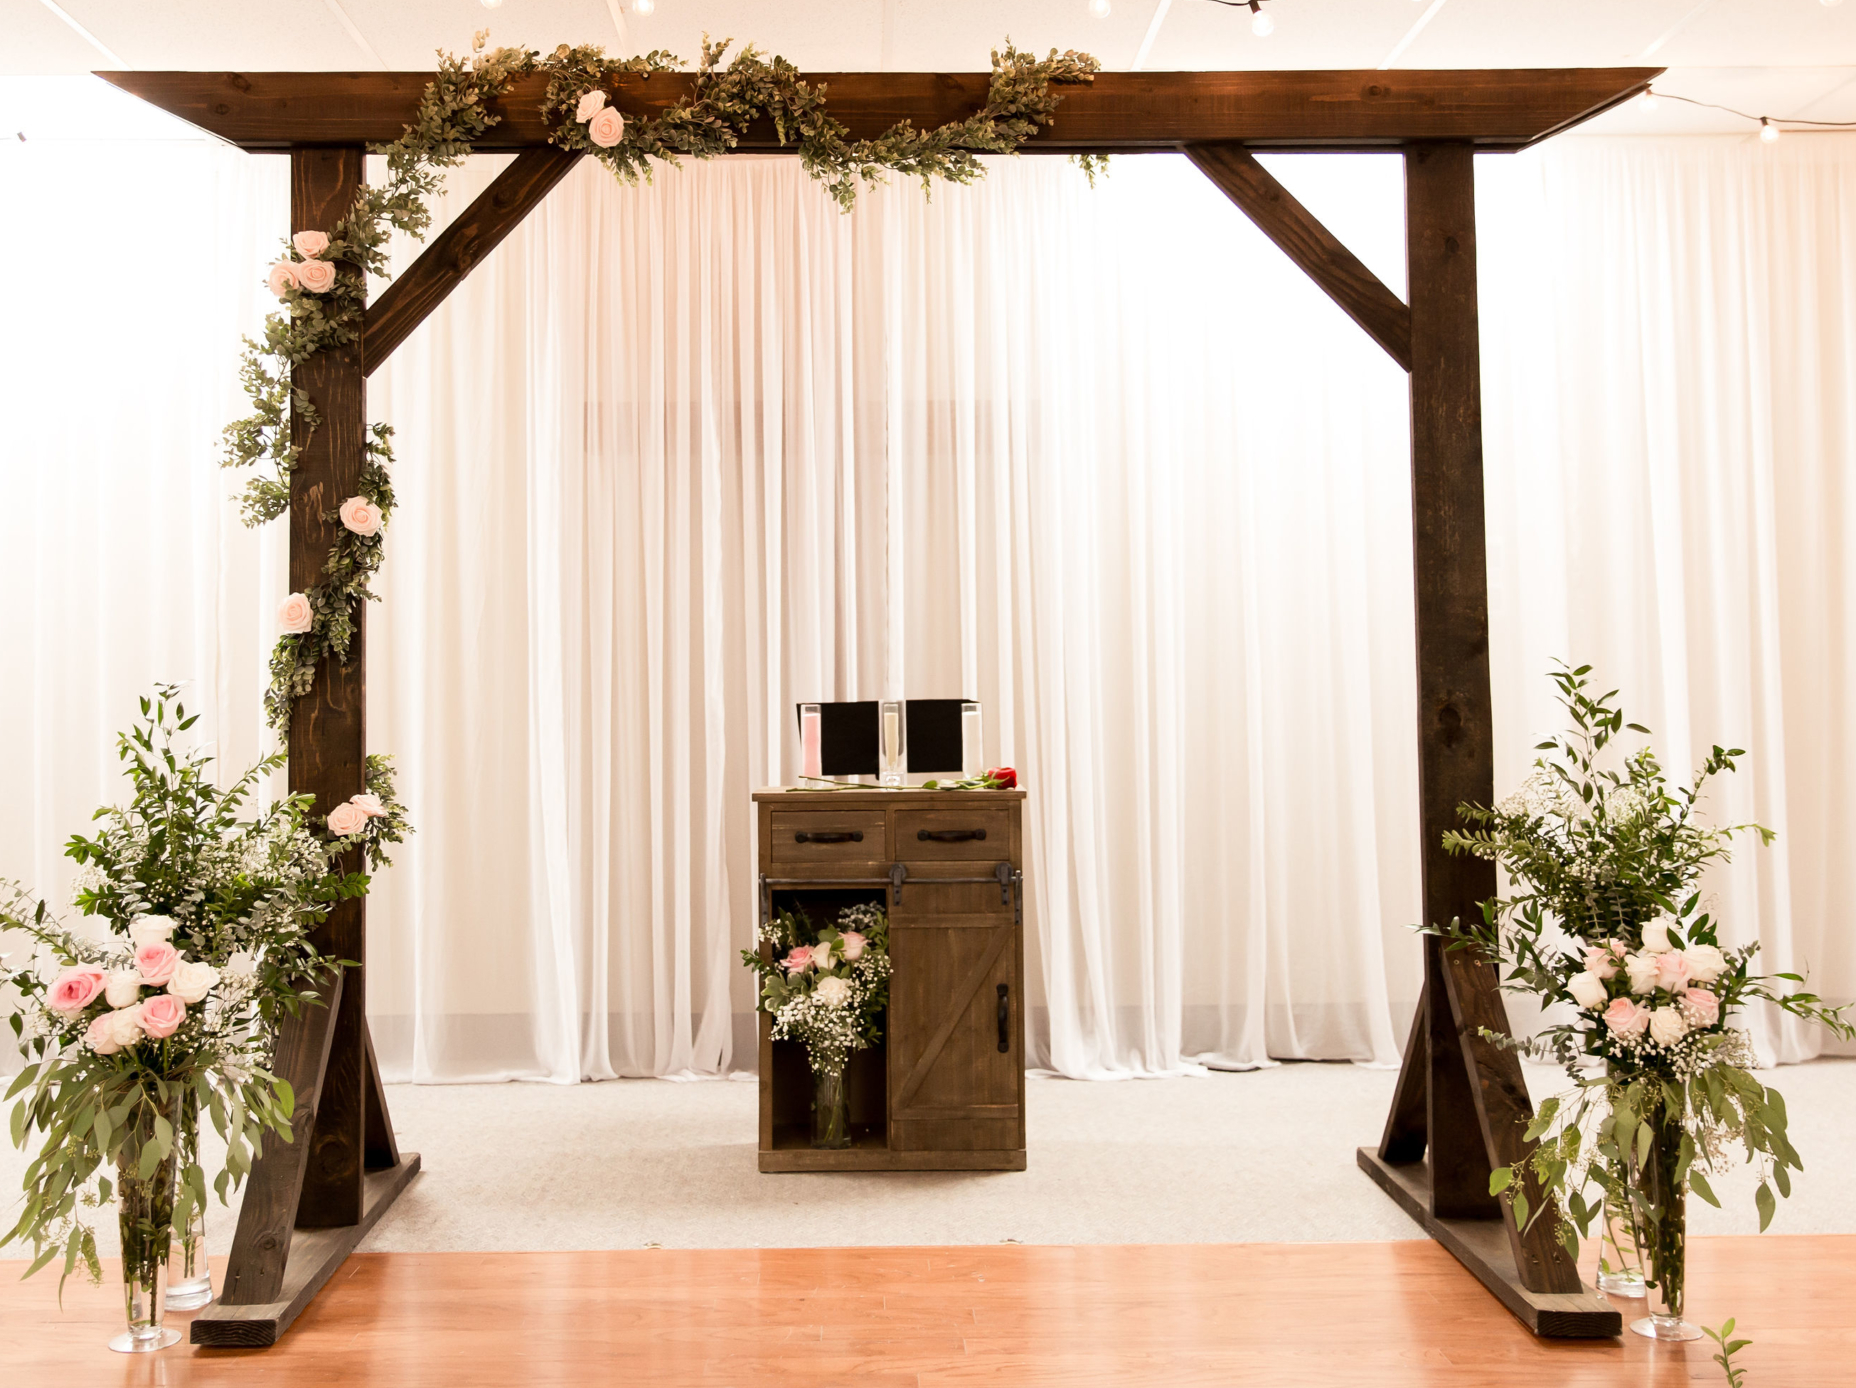 How to build a wedding arbor